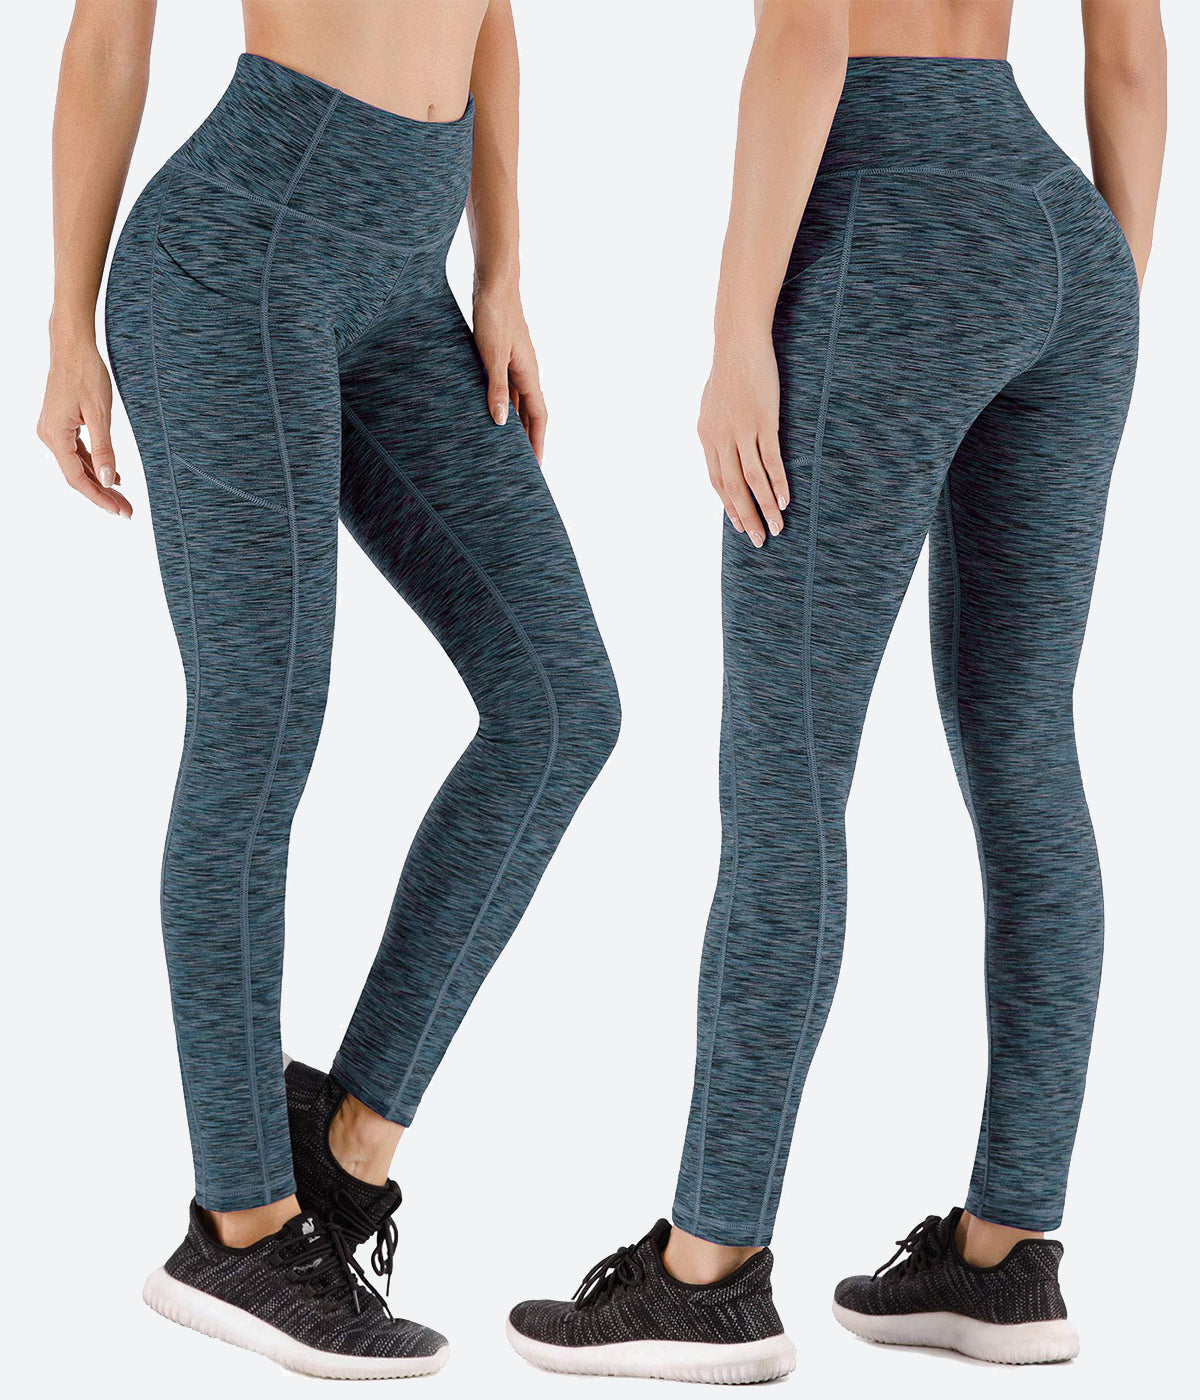 Heathyoga Black Yoga Pants Size XXL - 60% off